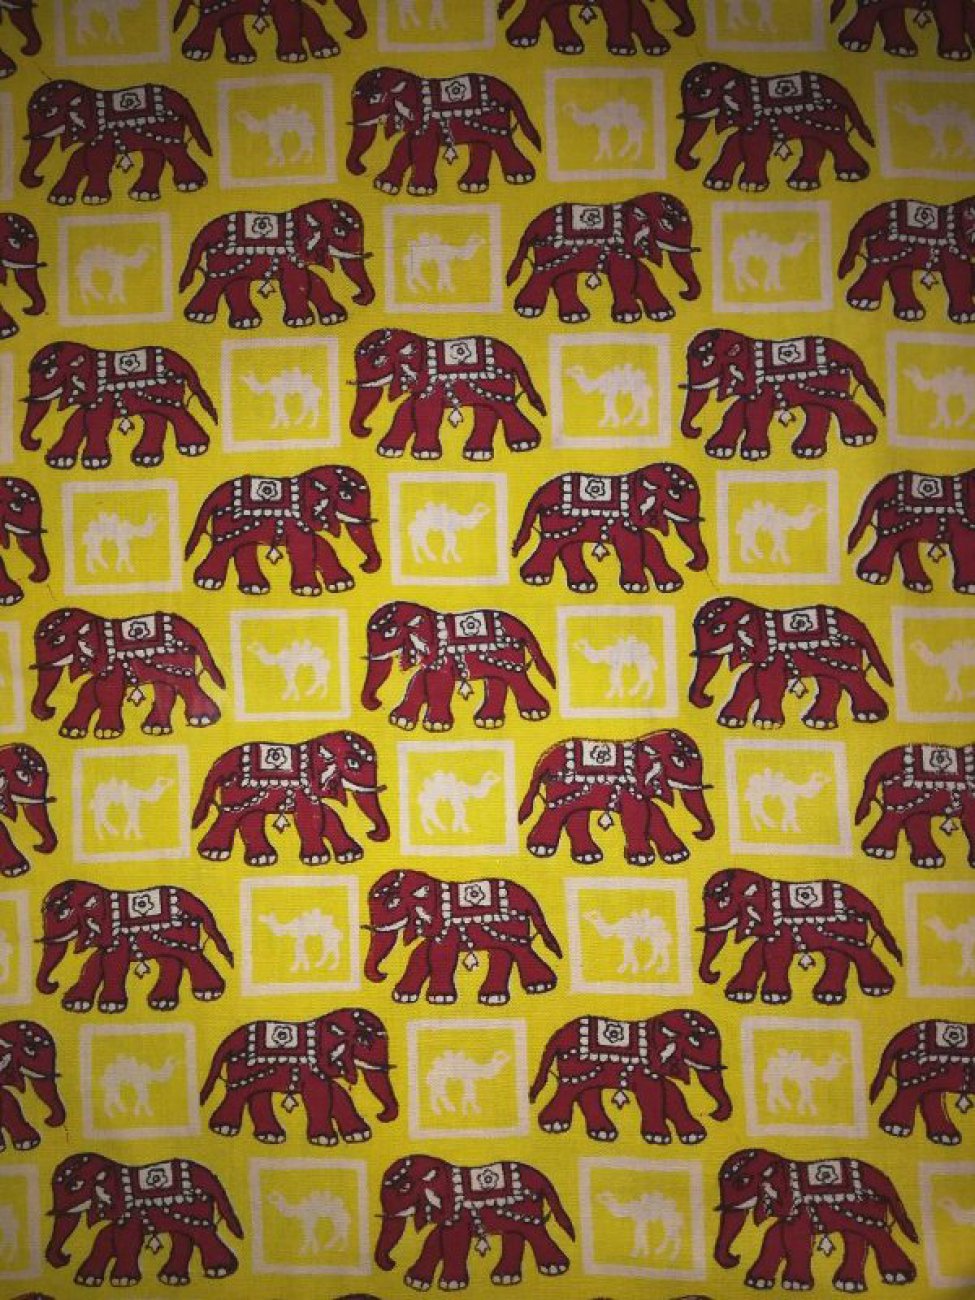 Желтого цвета с набивными красными слонами и белыми верблюдами в белых клетках, расположенными в шахматном порядке.